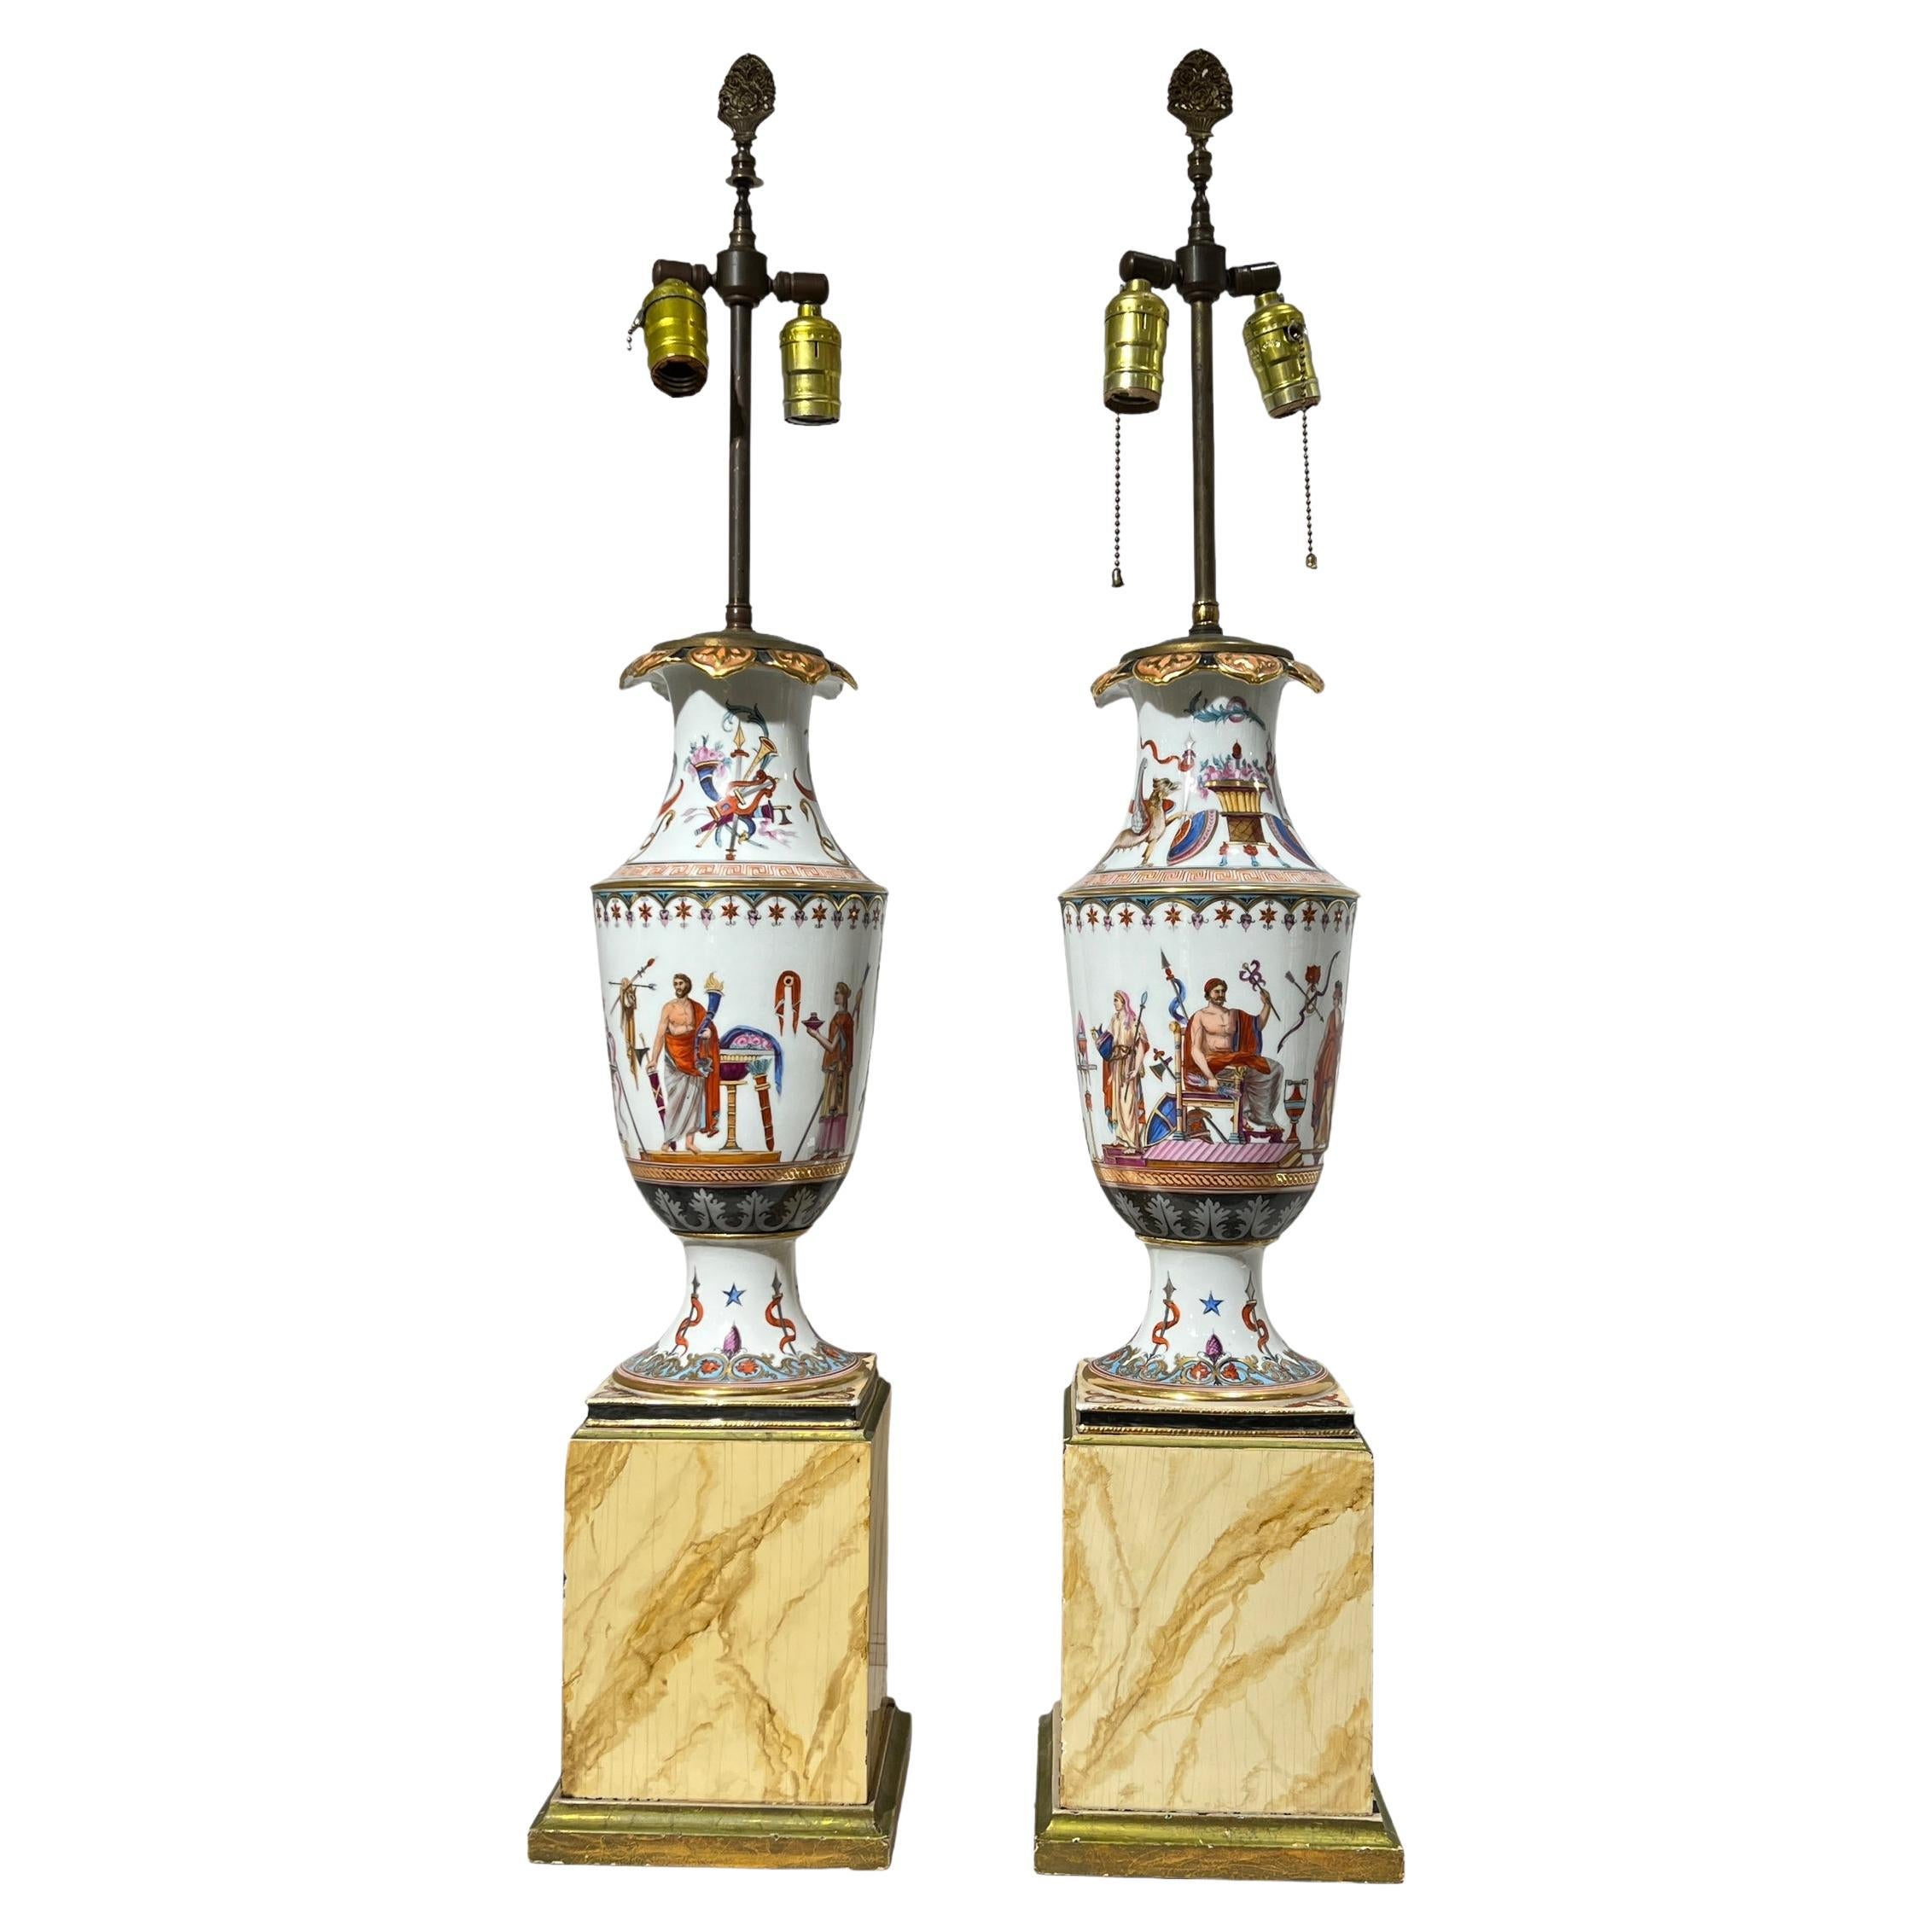 Paar antike Porzellanvasen im griechischen Revival-Stil als Tischlampen montiert